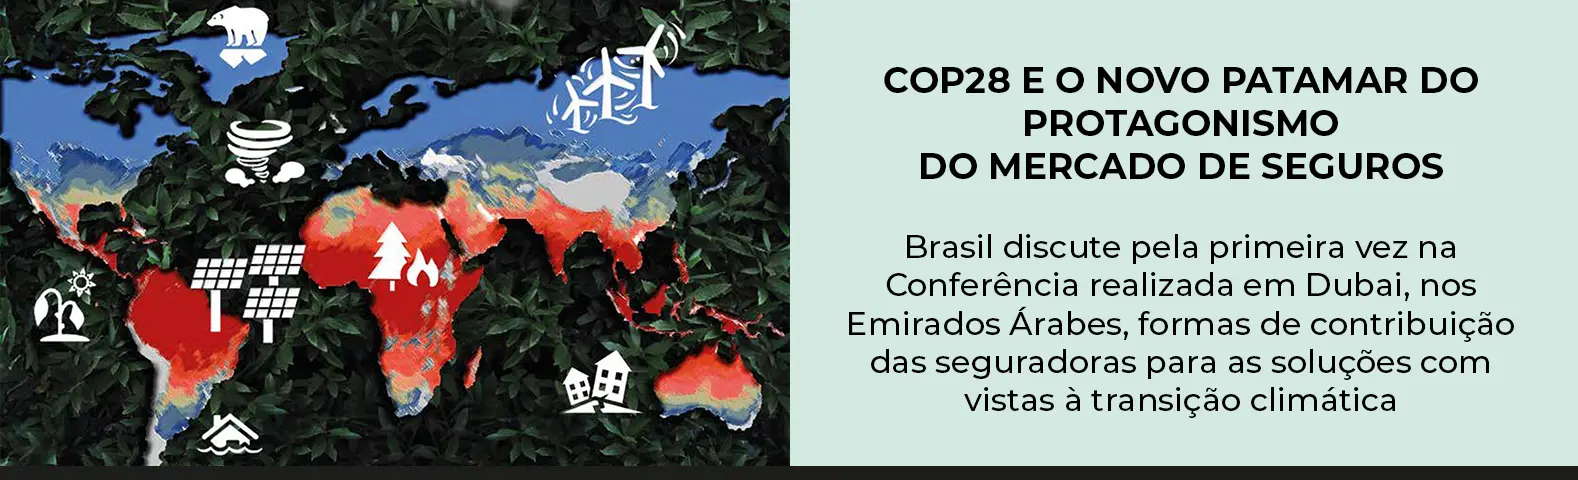 COP28 E O NOVO PATAMAR DO PROTAGONISMO DO MERCADO DE SEGUROS